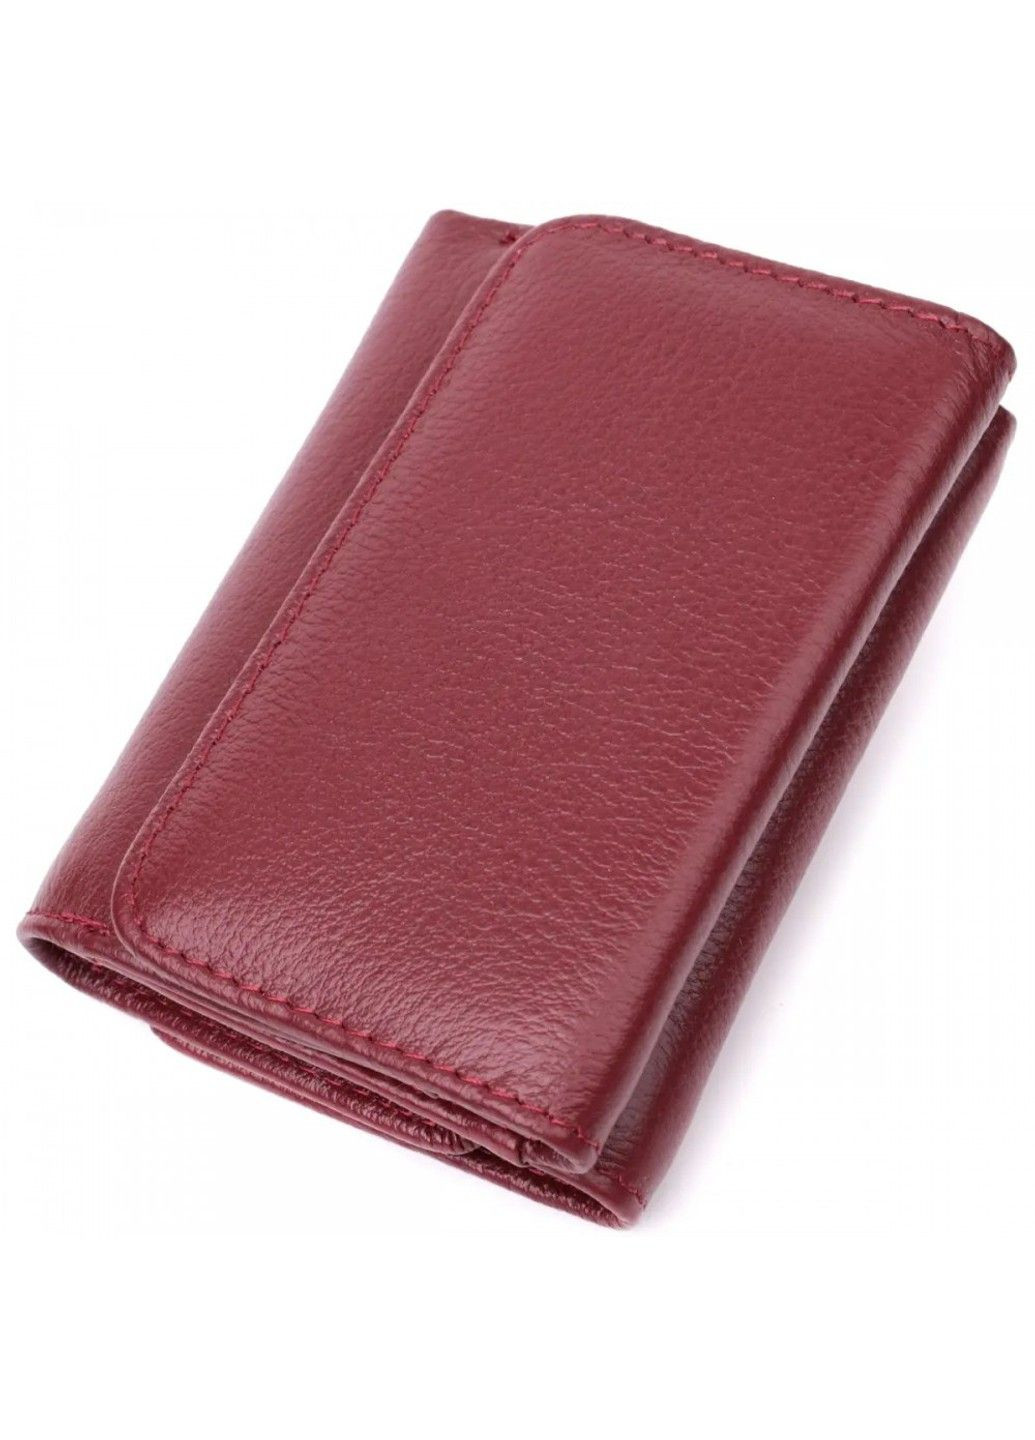 Шкіряний жіночий гаманець ST Leather 22507 ST Leather Accessories (278274799)